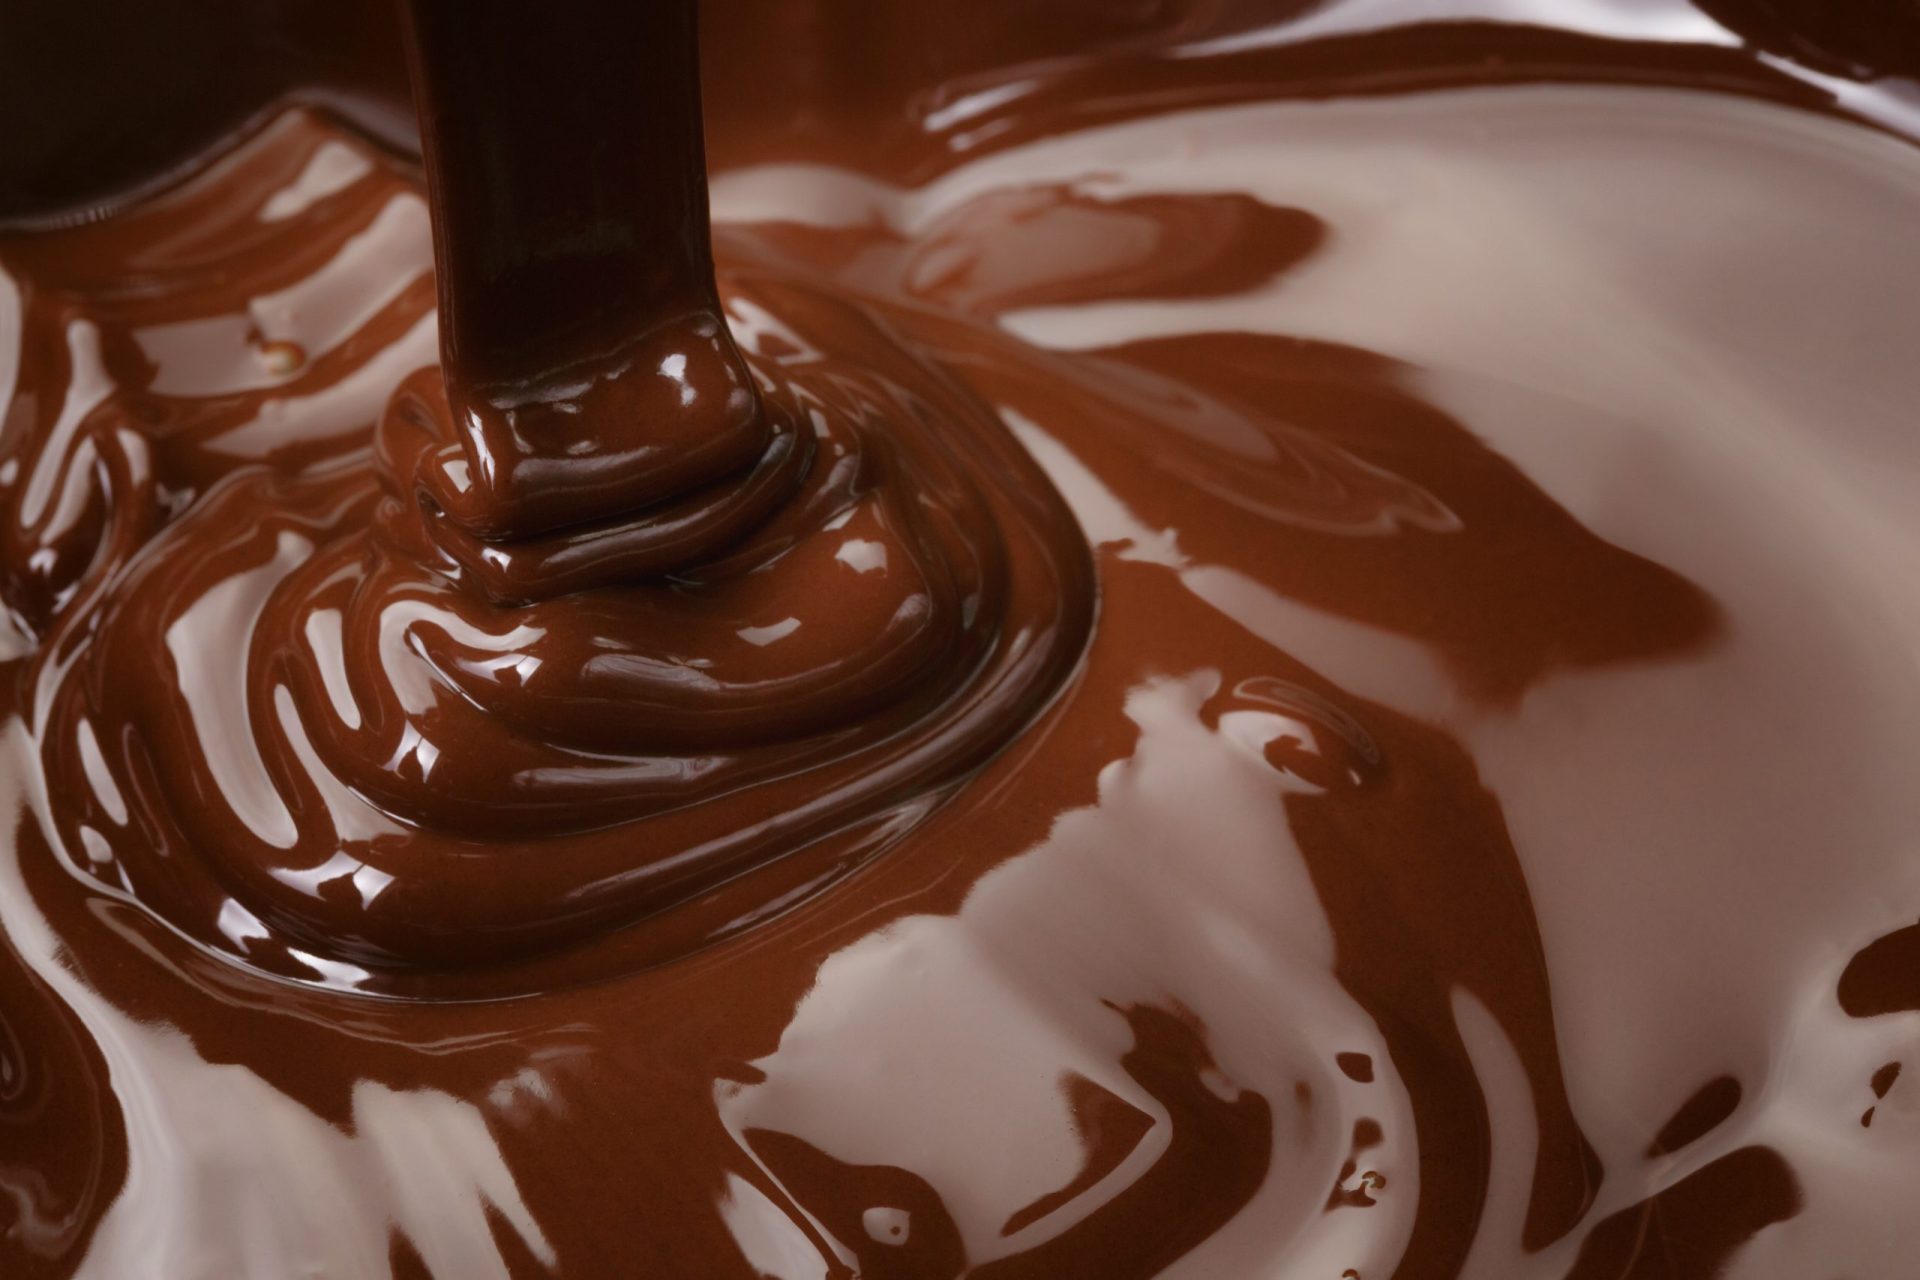 Chocolate proveniente de Espanha preocupa empresas portuguesas